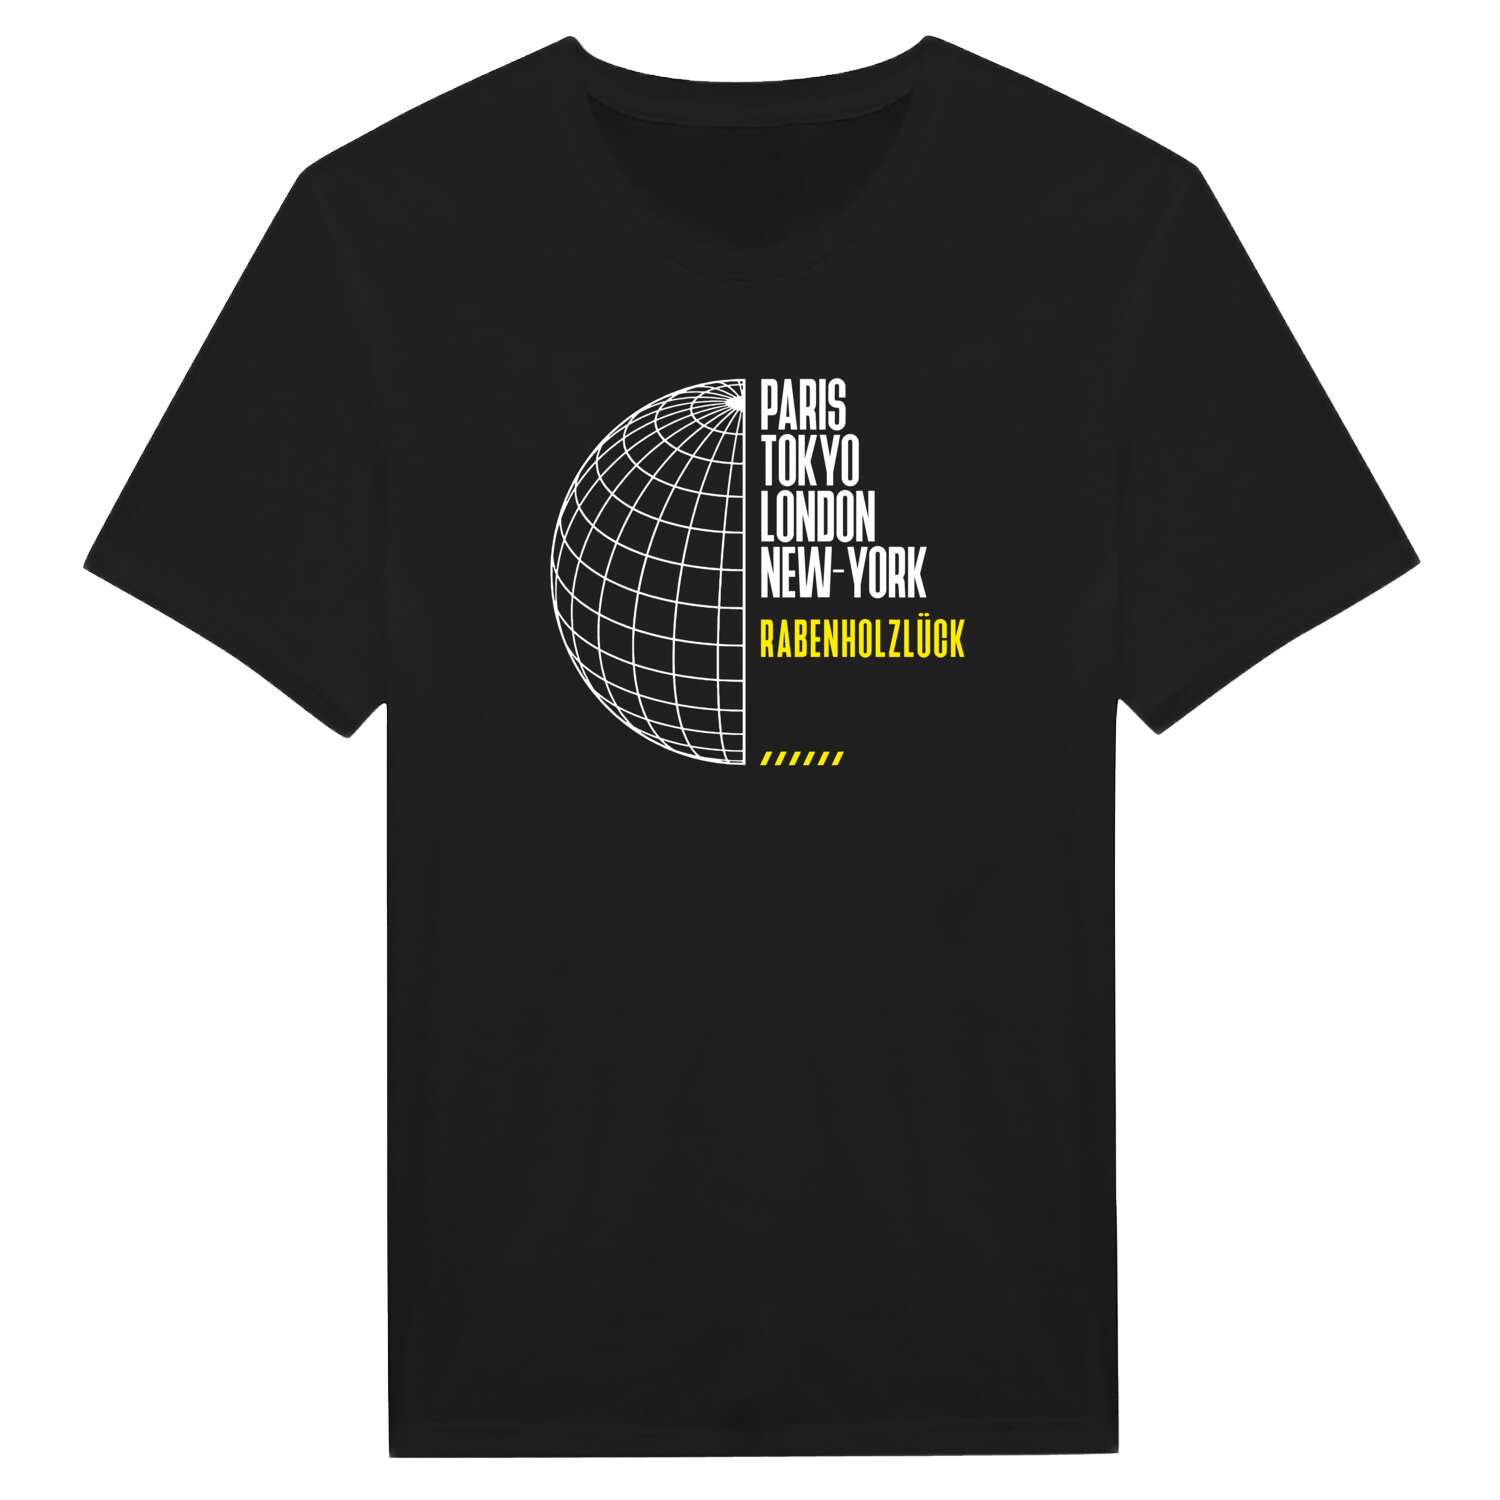 Rabenholzlück T-Shirt »Paris Tokyo London«